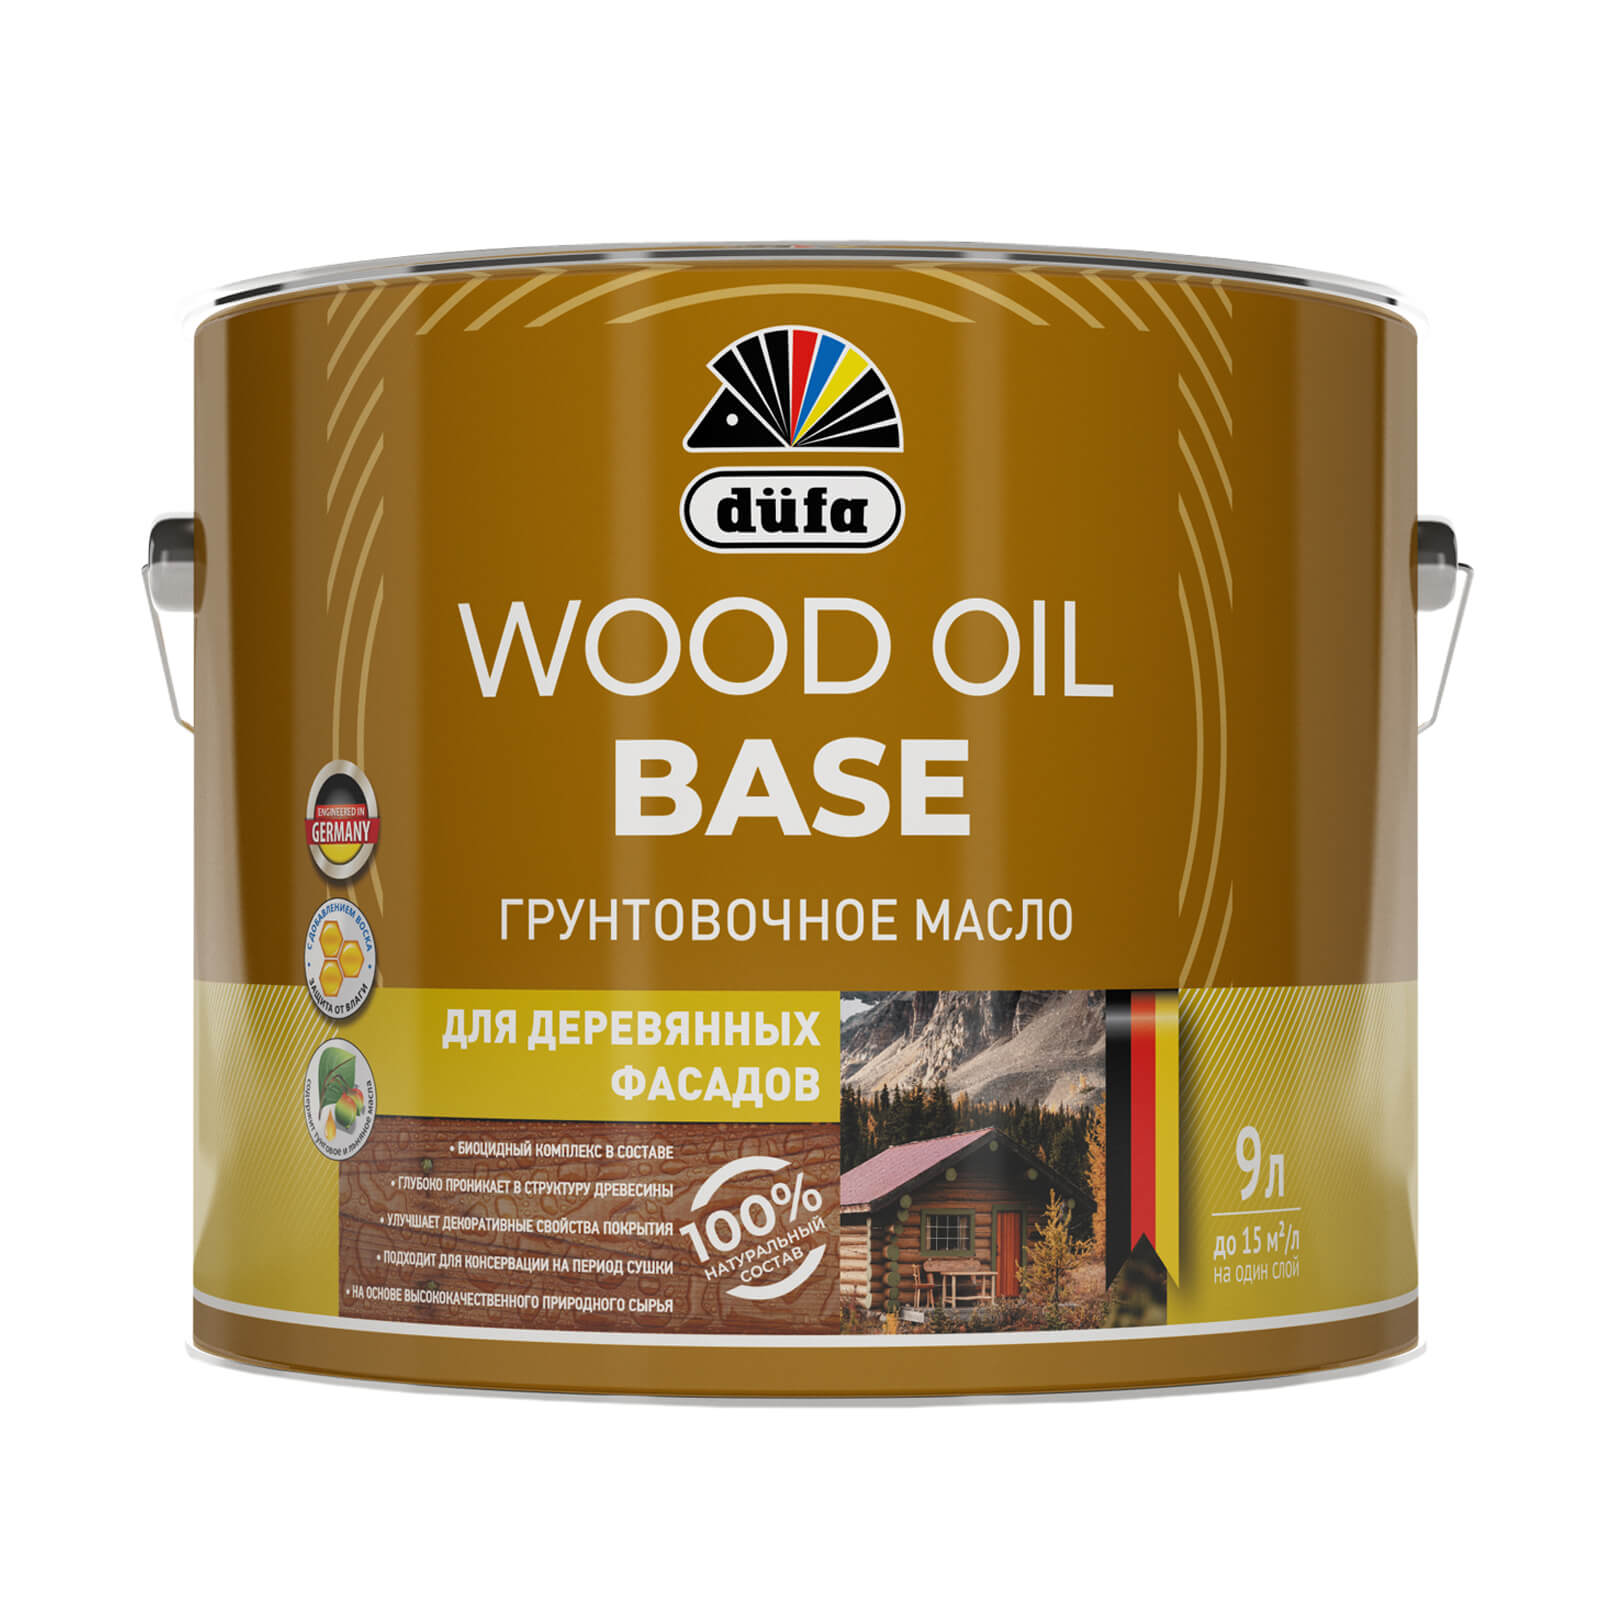 фото Грунтовочное масло dufa (дюфа) wood oil base 9л мп00-011638